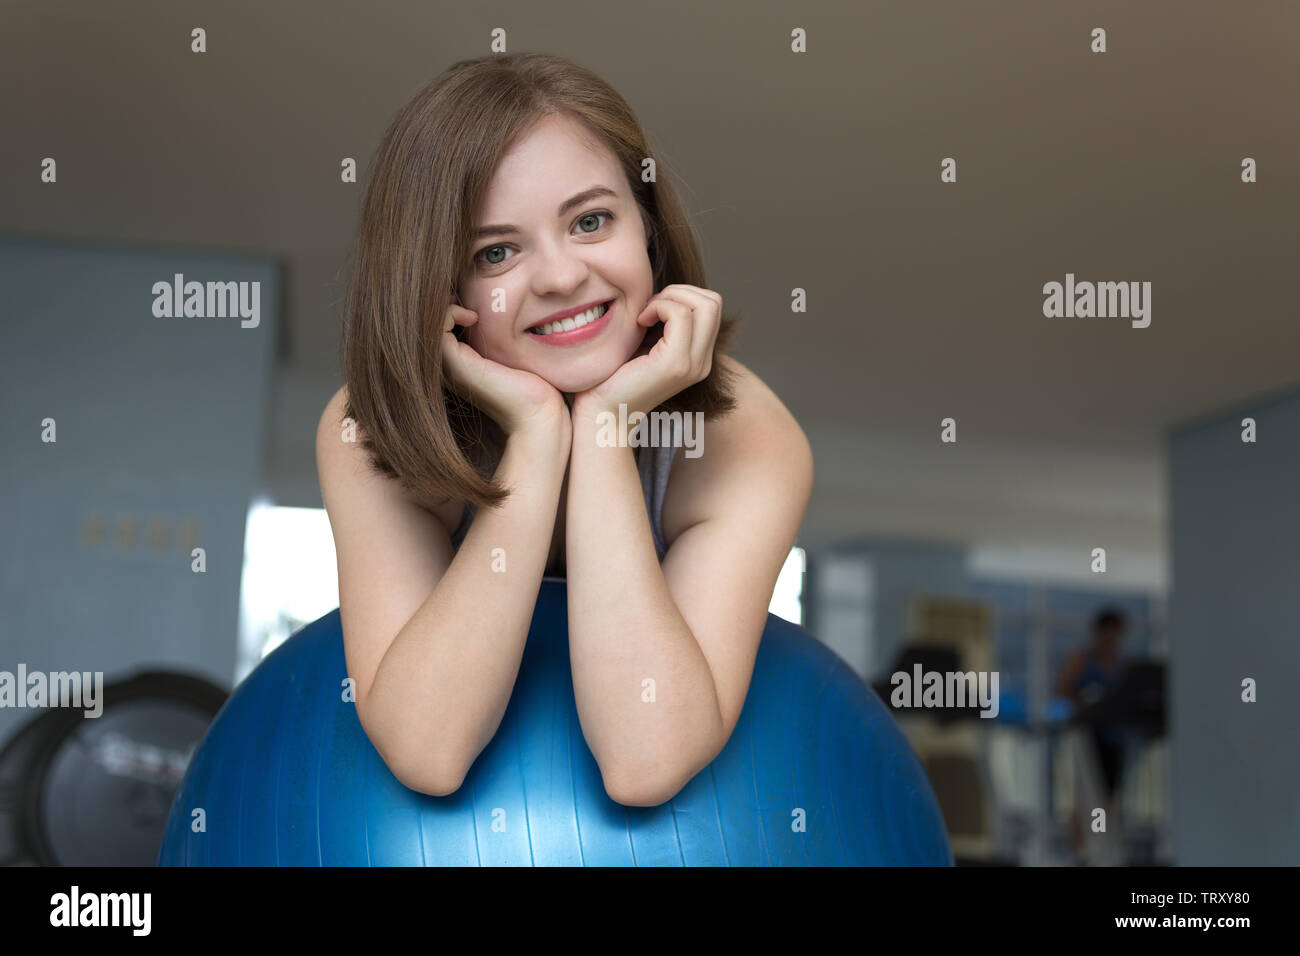 Sorridente giovane donna caucasica ragazza sul blu palla ginnica presso la palestra, fare allenamento o yoga pilates esercizio Foto Stock